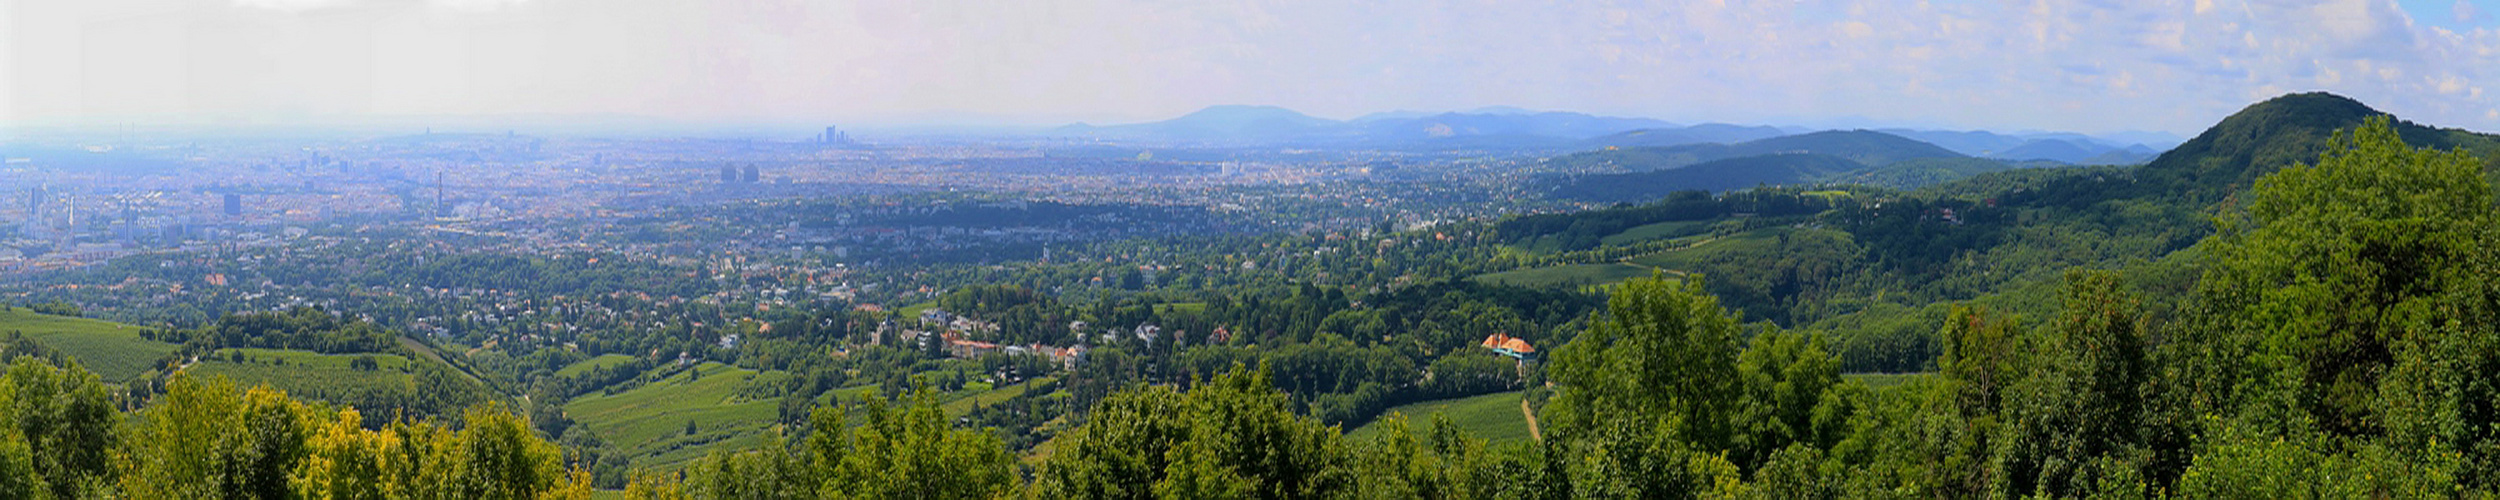 Panoramablick vom Kahlenberg auf Wien.